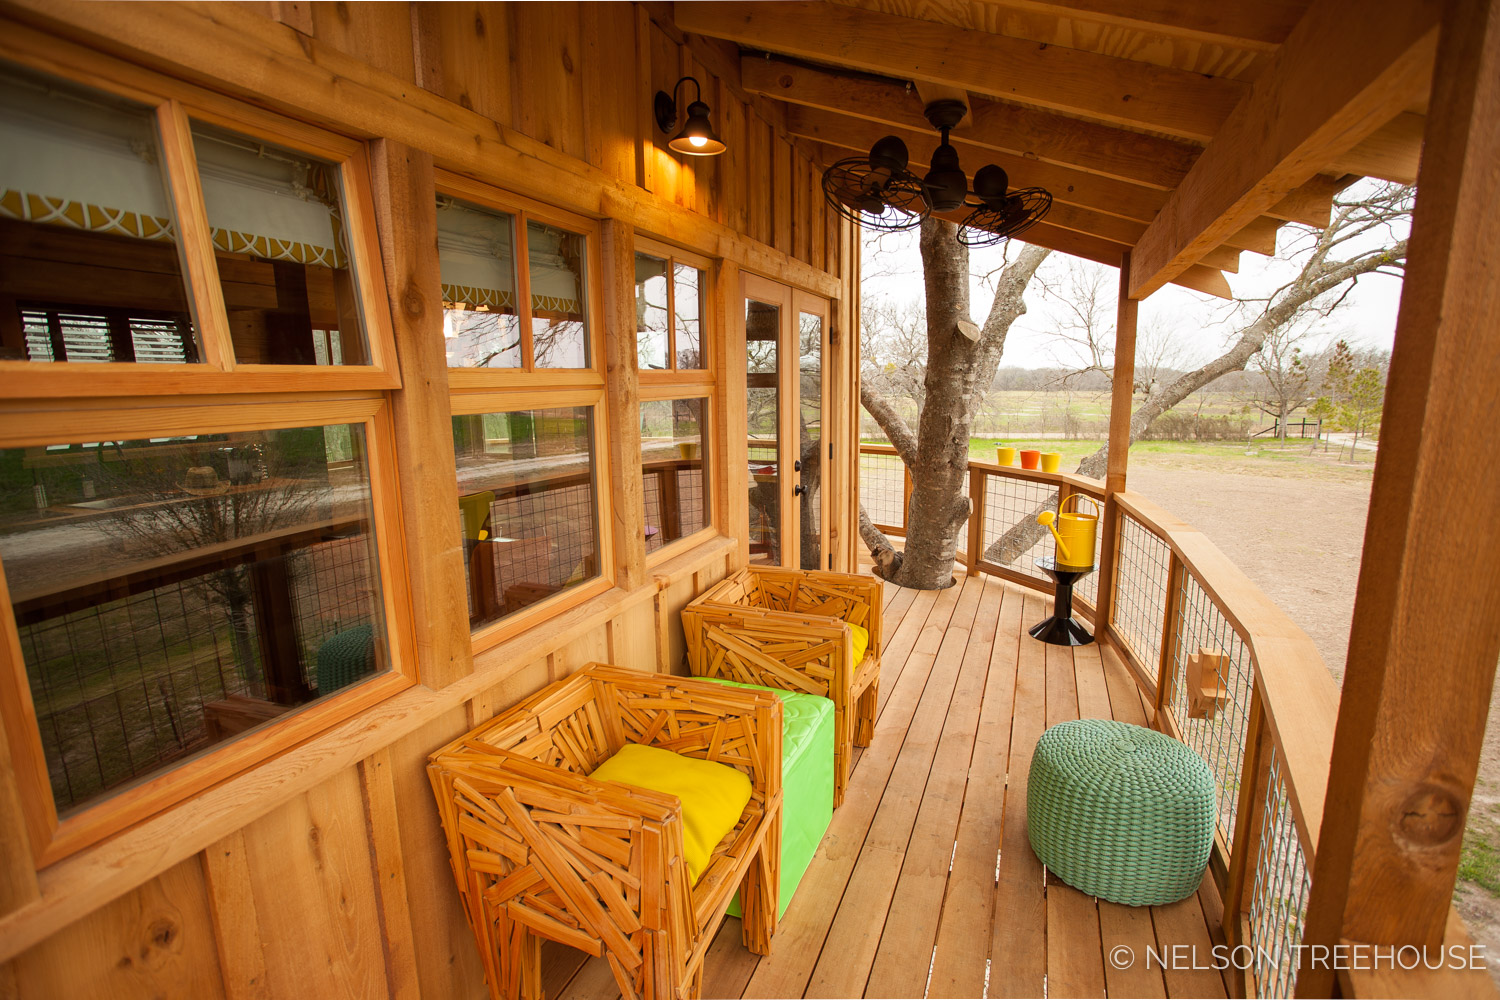  Nelson Treehouse - Twenty-Ton Texas Treehouse seating on deck 